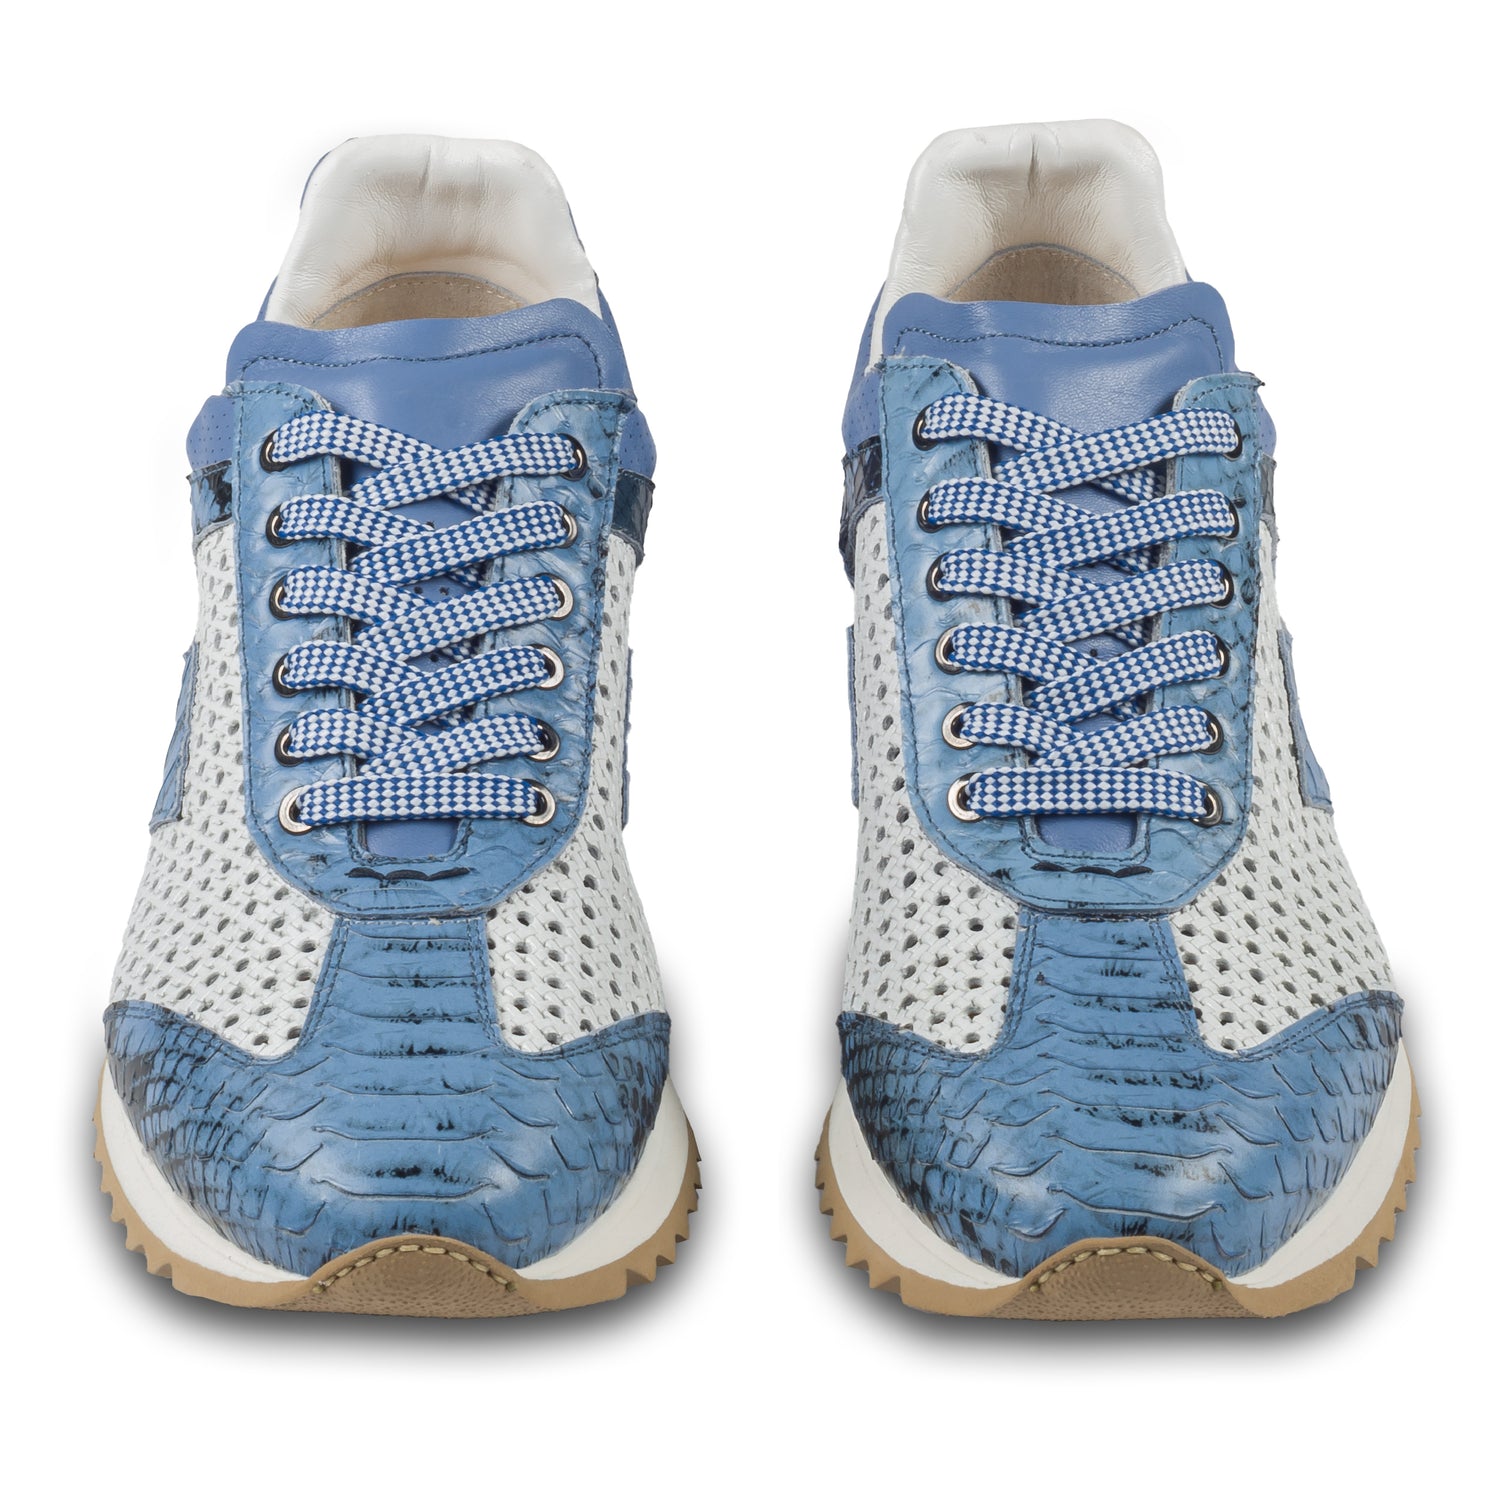 Lorenzi Herren Leder Sneaker in blau / weiß mit Schlangen-Prägung und perforiertem Kalbsleder. Handgefertigt in Italien. Paarweise Ansicht von vorne. 